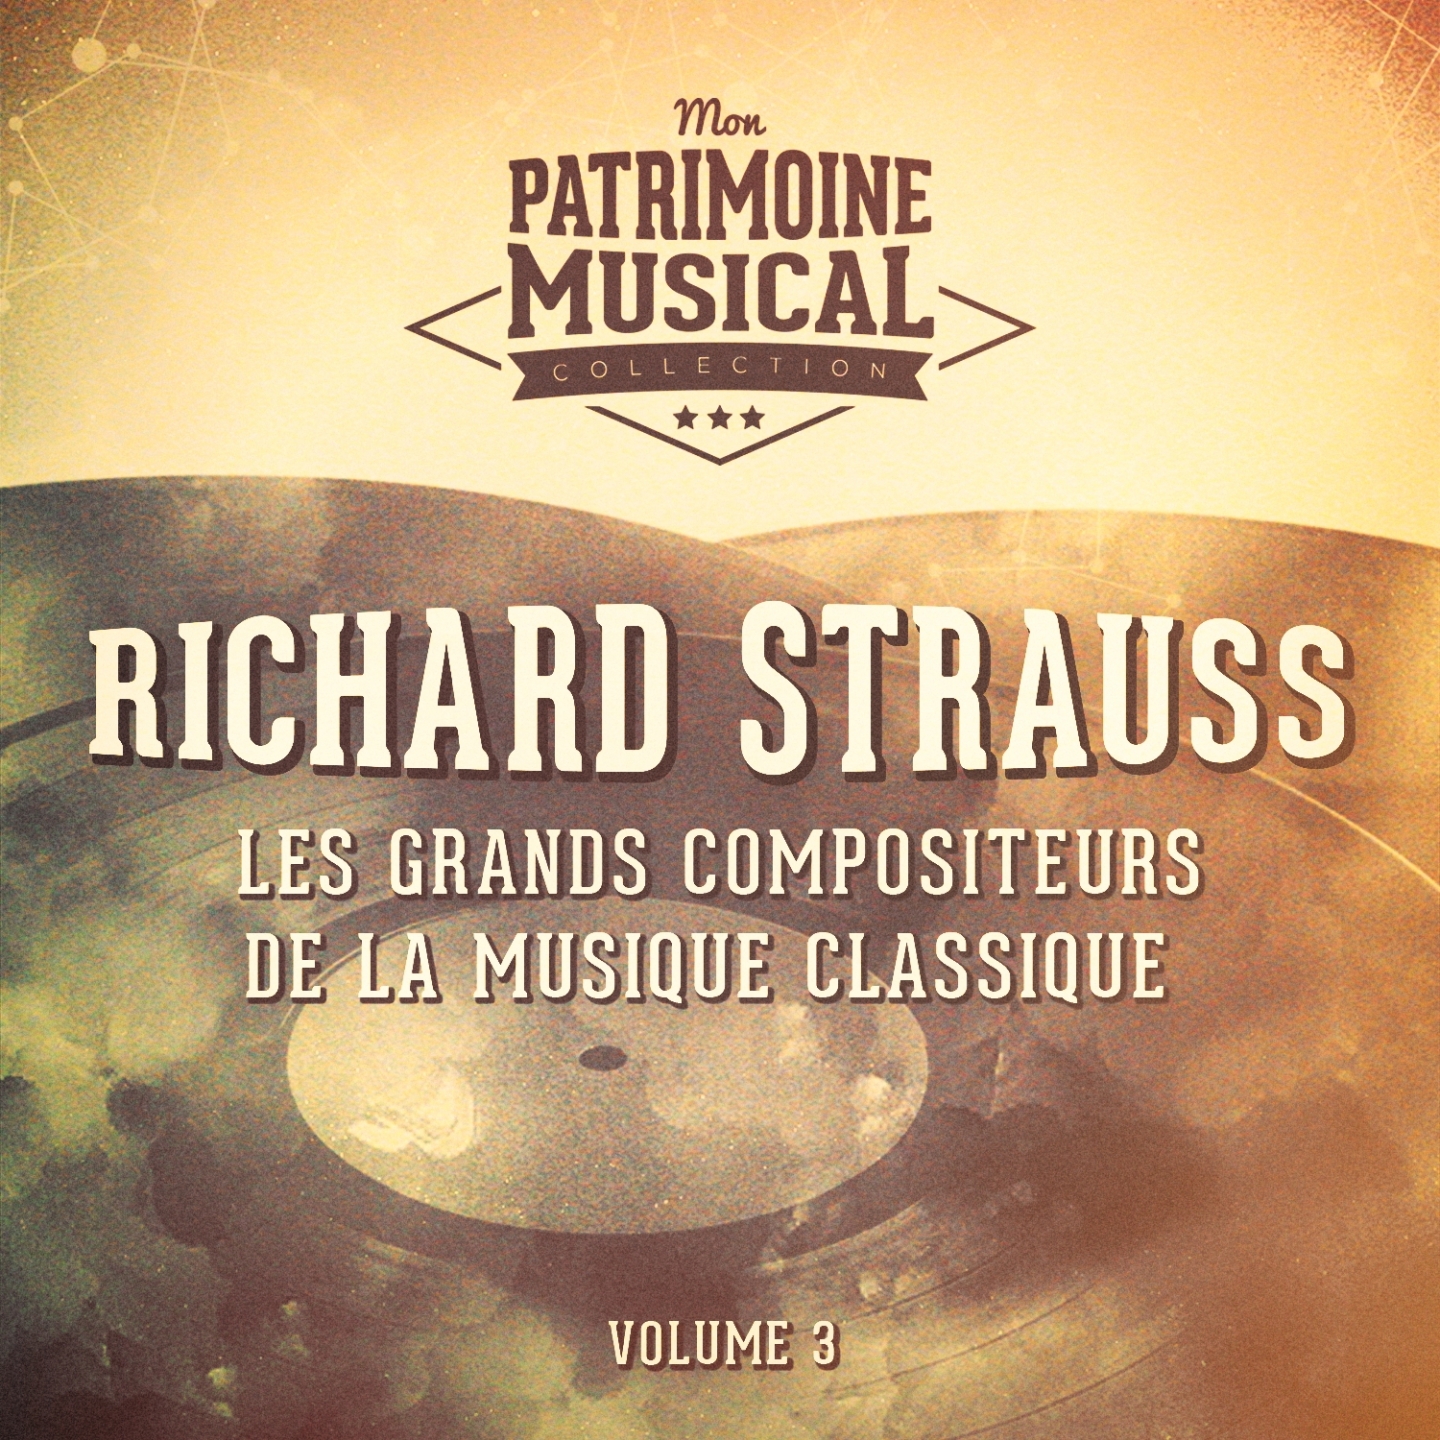 Les grands compositeurs de la musique classique : Richard Strauss, Vol. 3